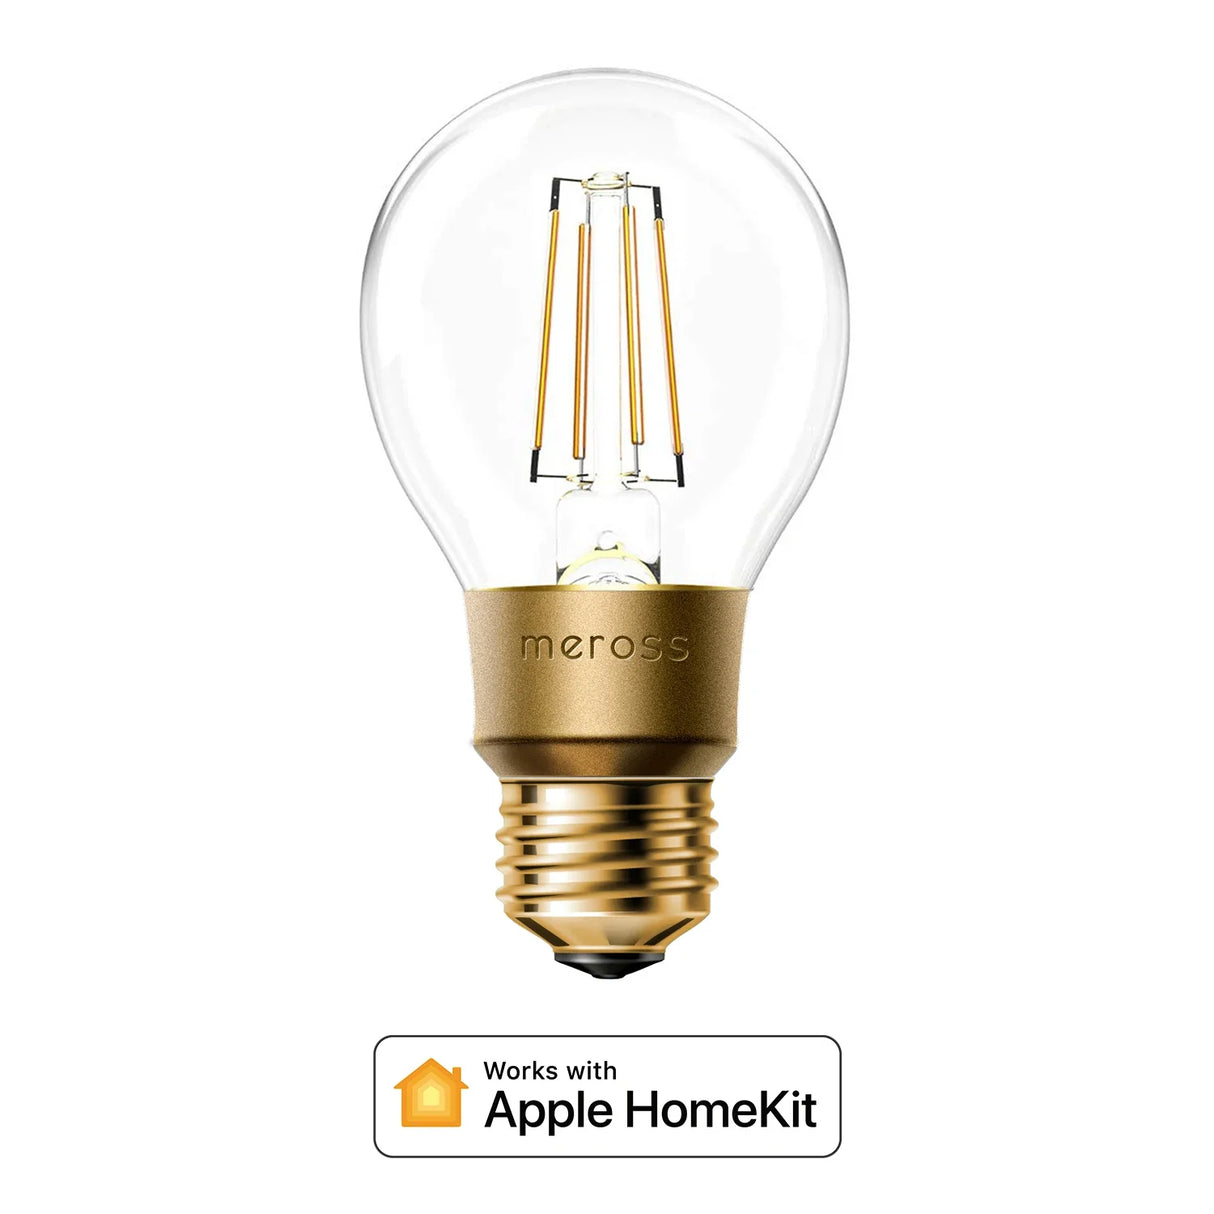 a light bulb with the words apple hon